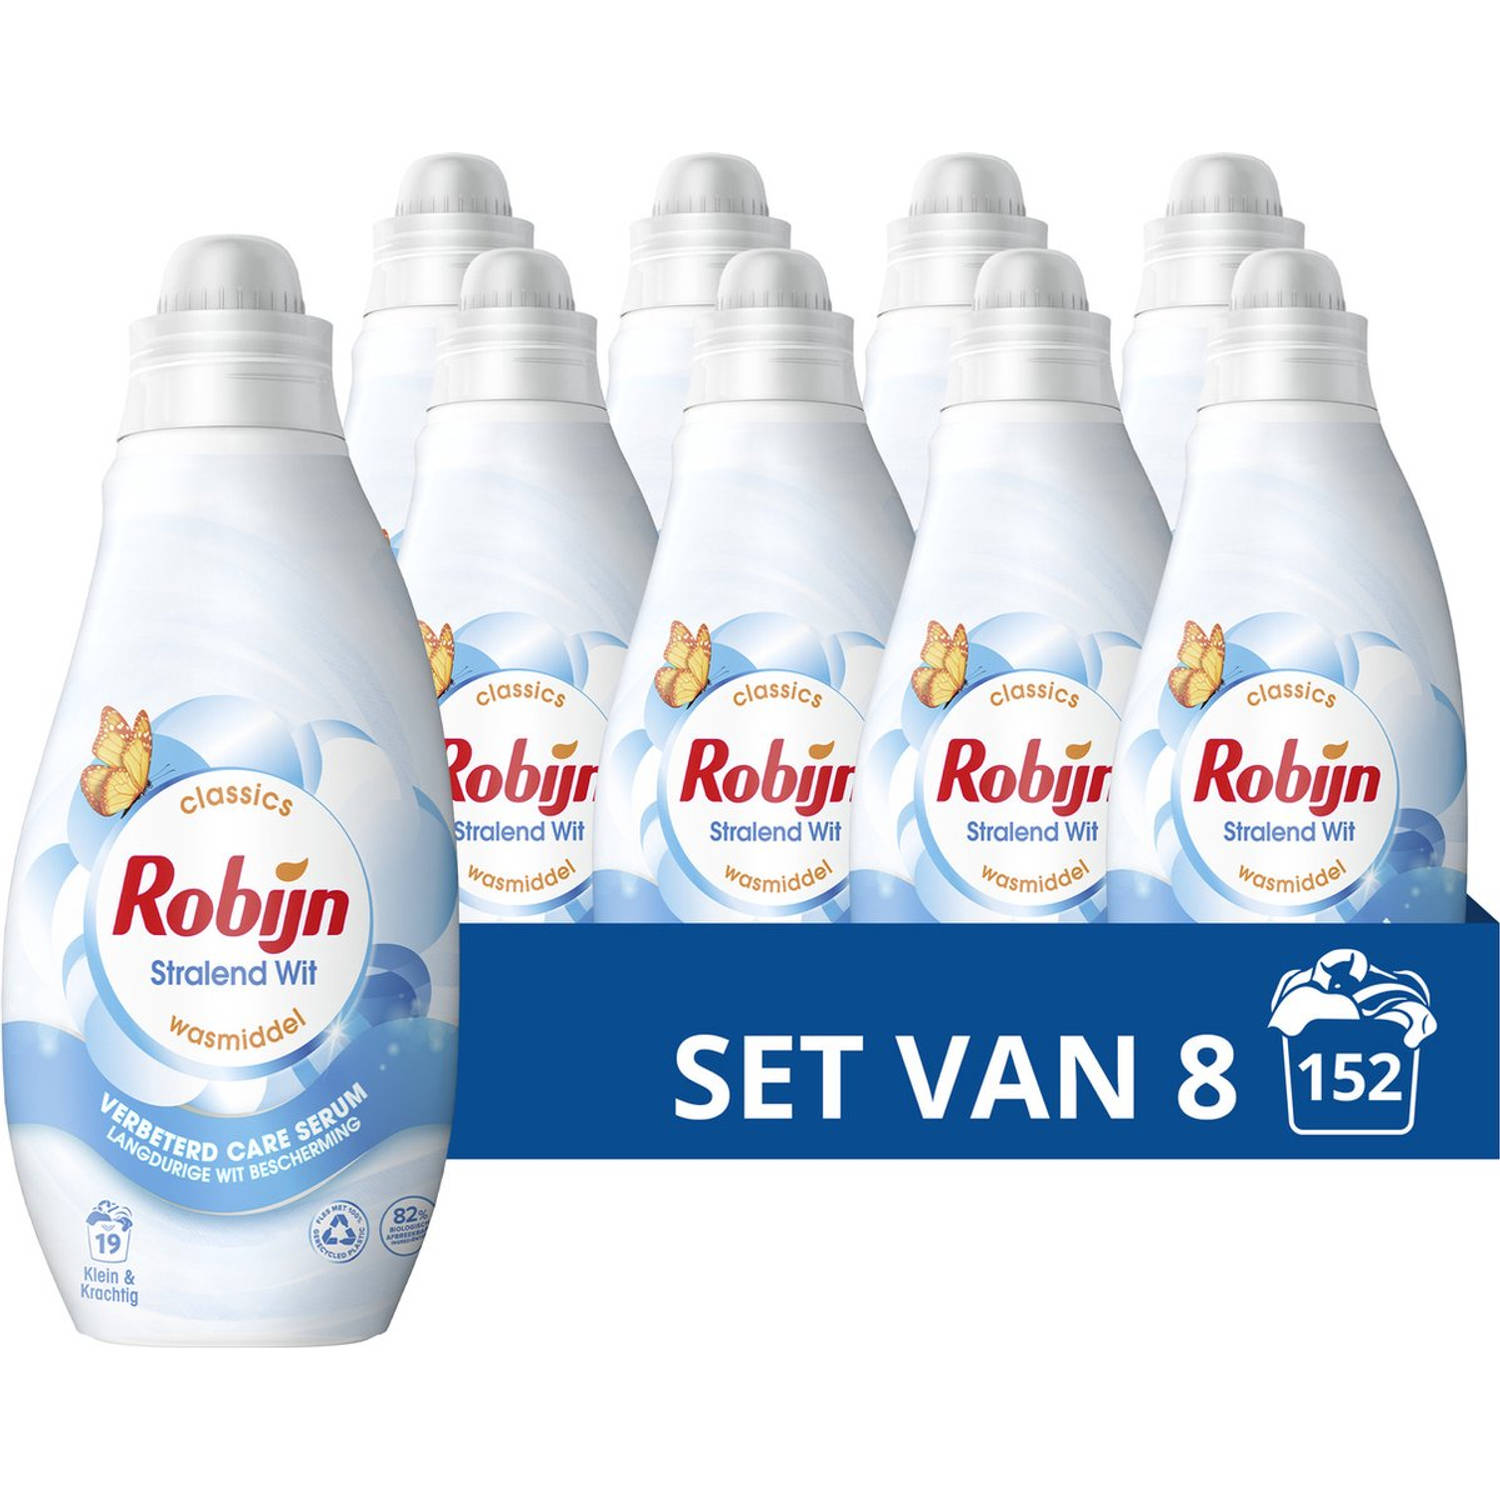 Robijn Klein & Krachtig Classics Vloeibaar Wasmiddel - Stralend Wit - met Care Serum en 82% biologisch afbreekbare ingrediënten - 8 x 19 wasbeurten